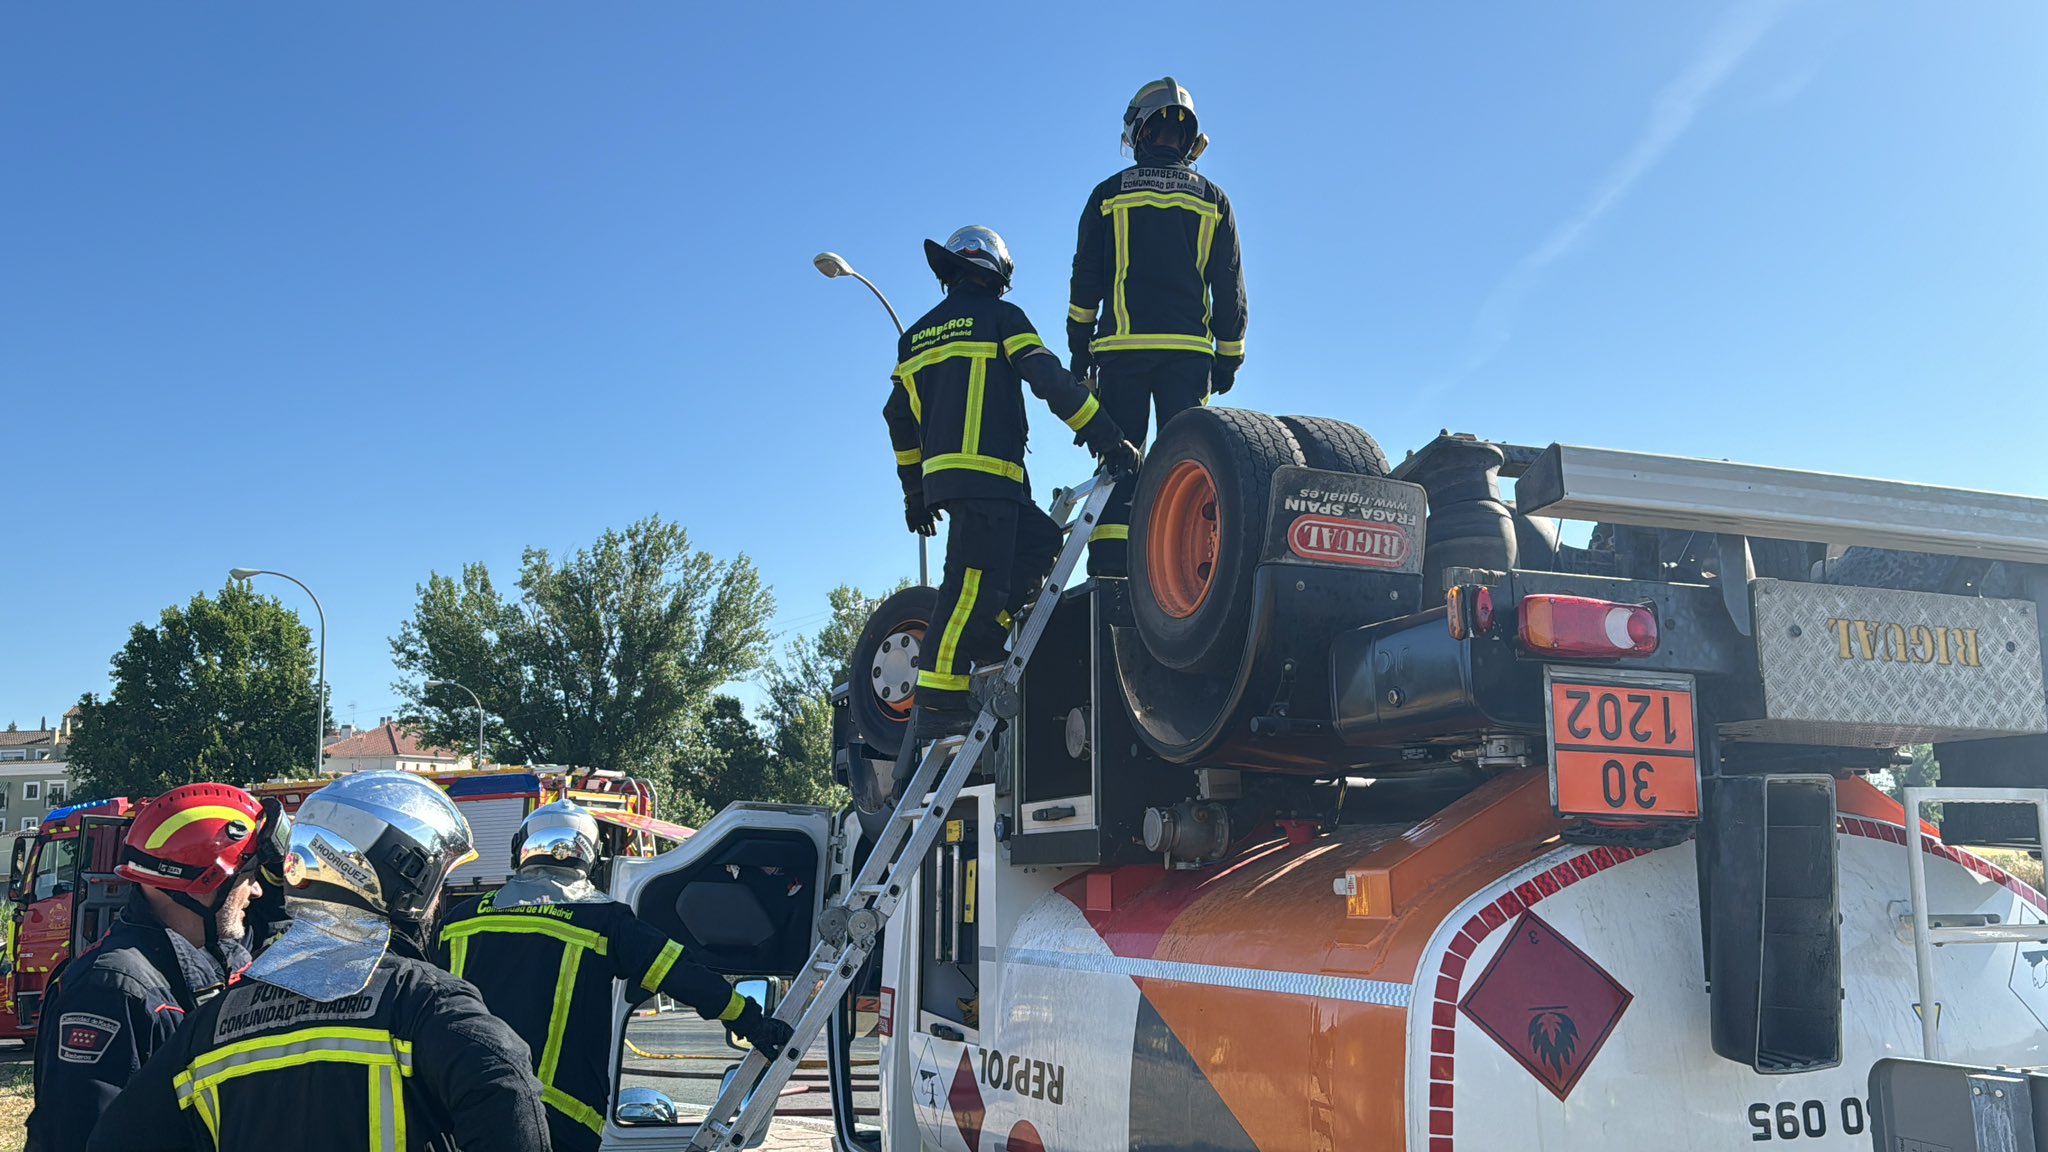 Vuelco de cisterna de gasoil en Titulcia: Conductor herido leve y 500 litros de combustible vertidos